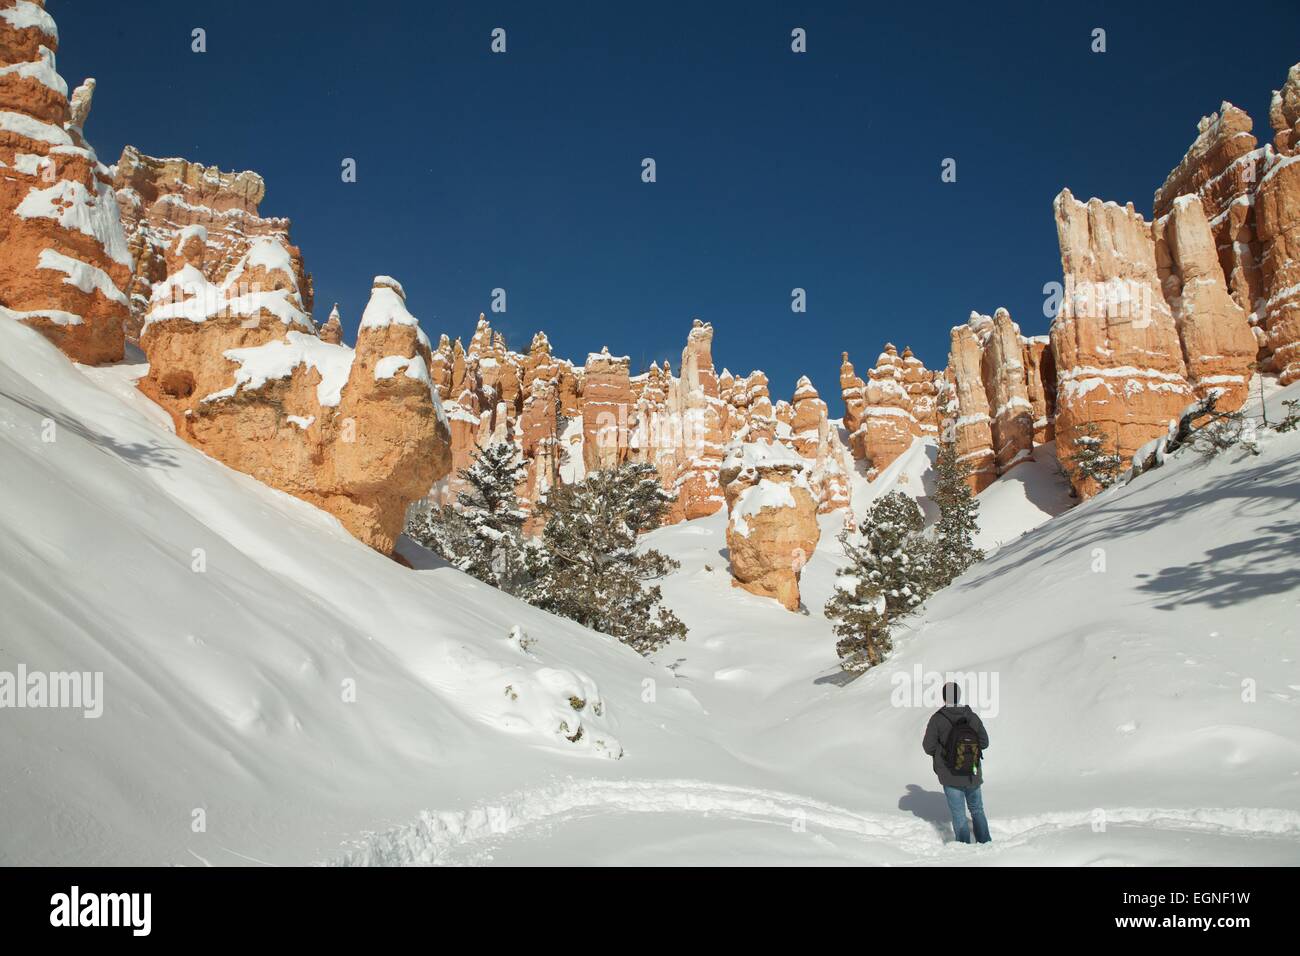 Un randonneur dans le Parc National de Bryce Canyon dans l'Utah, United States en hiver. Banque D'Images